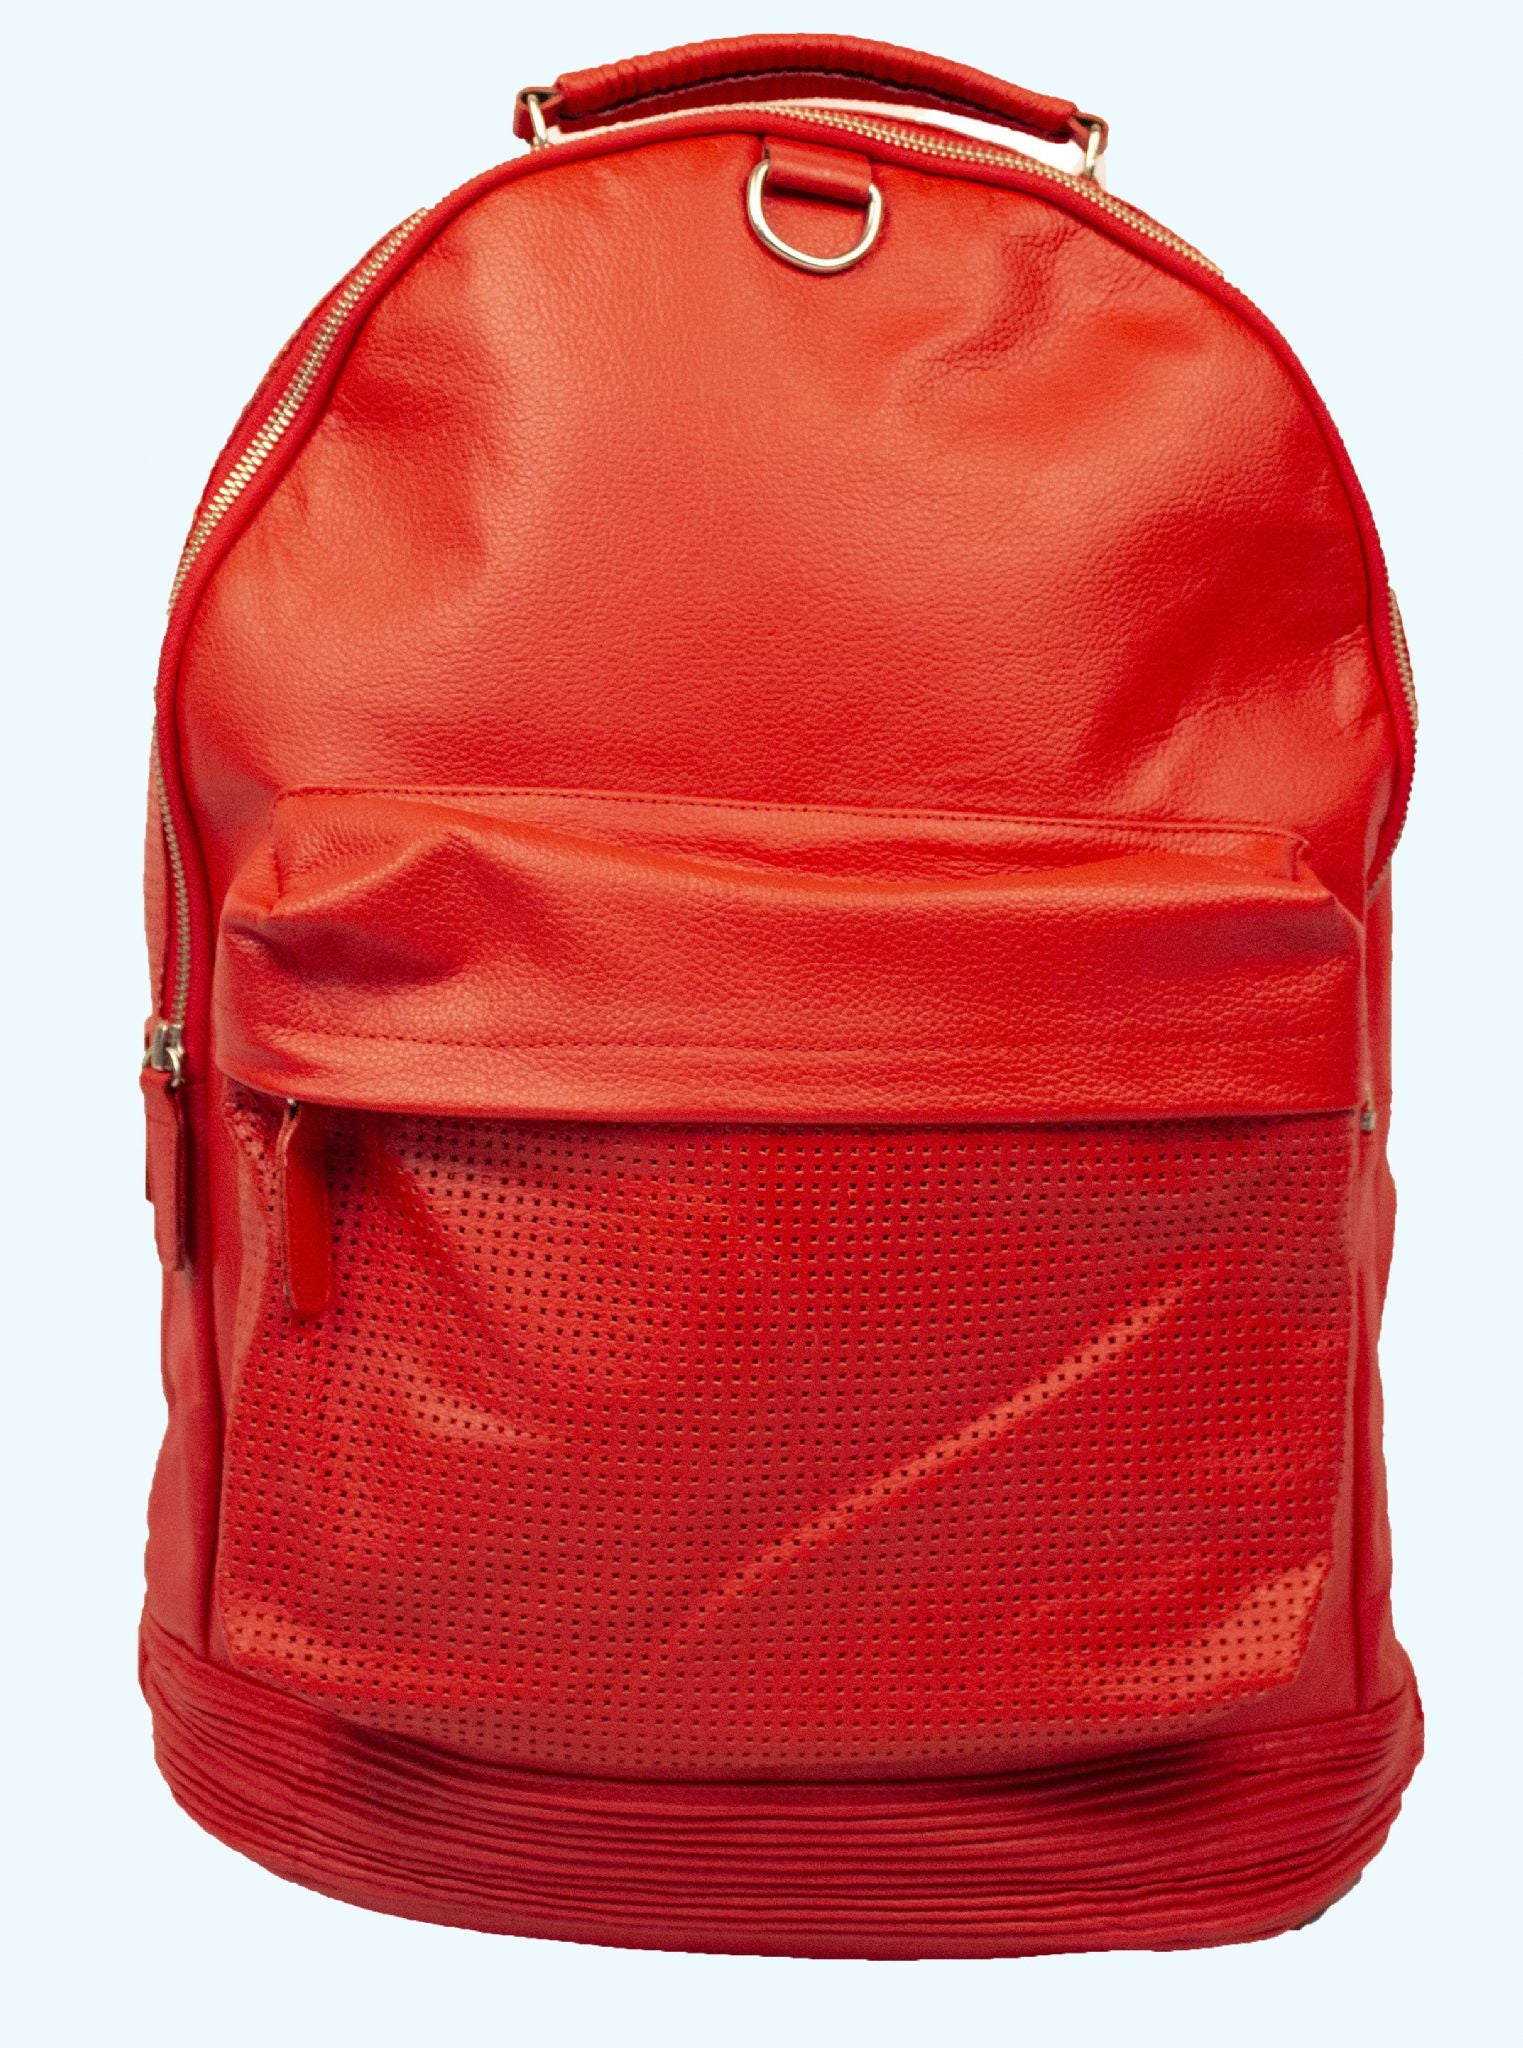 Stylish Travel Bag